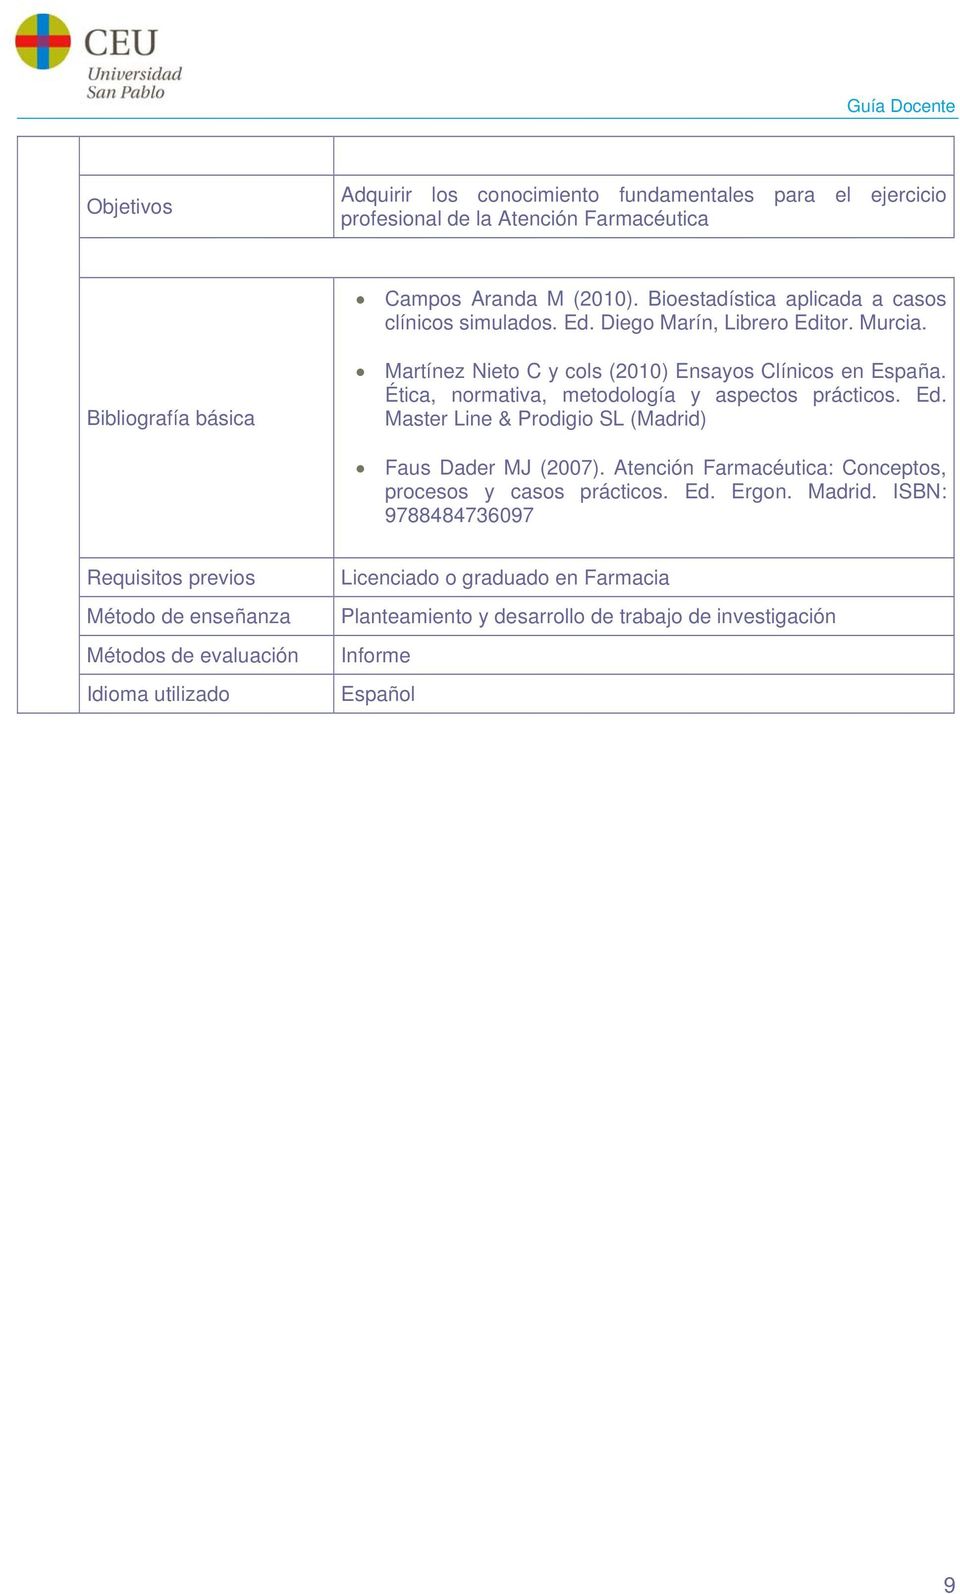 Ética, normativa, metodología y aspectos prácticos. Ed. Master Line & Prodigio SL (Madrid) Faus Dader MJ (2007). Atención Farmacéutica: Conceptos, procesos y casos prácticos.